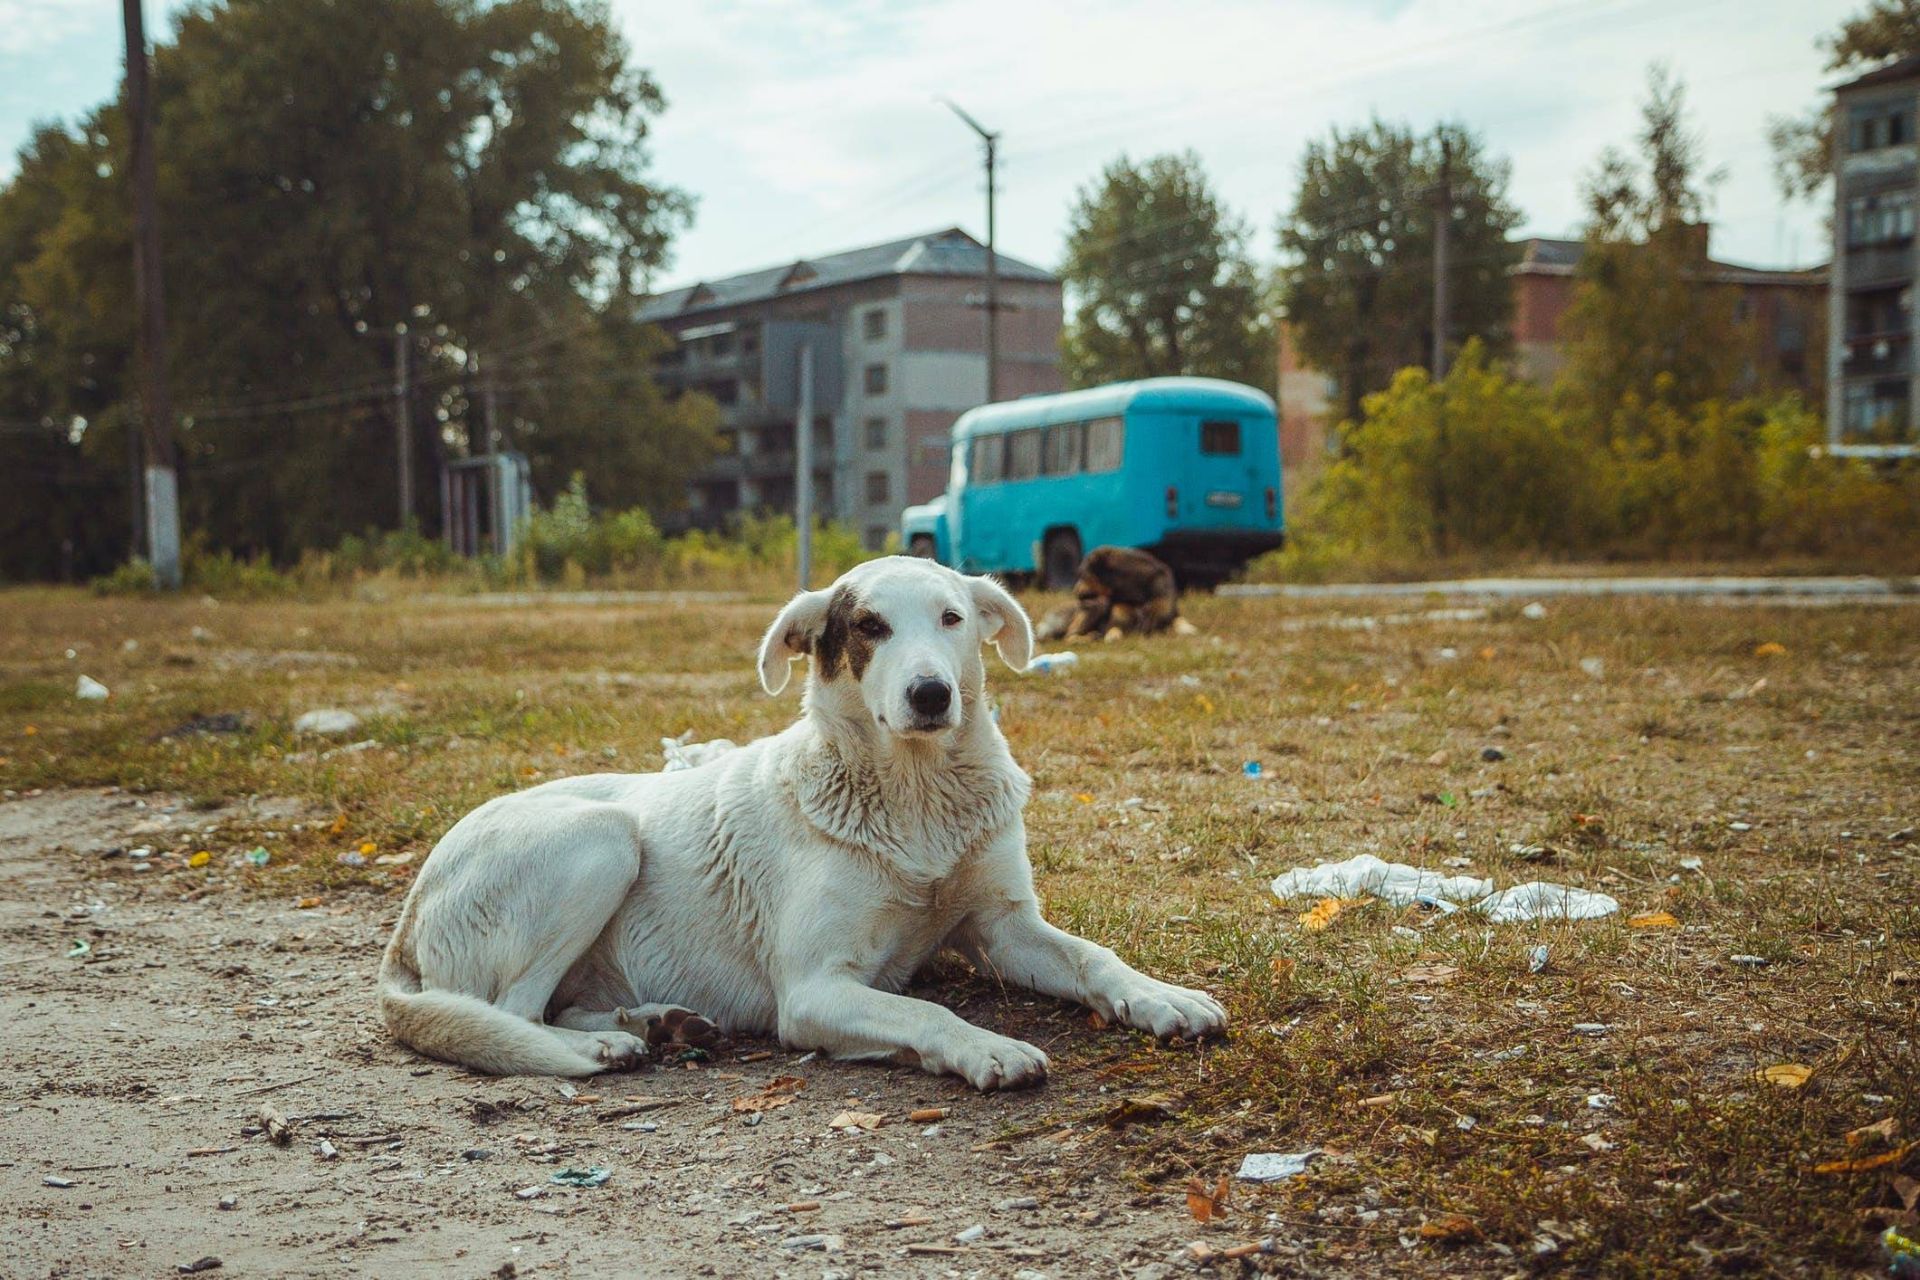 سگ در منطقه چرنوبیل